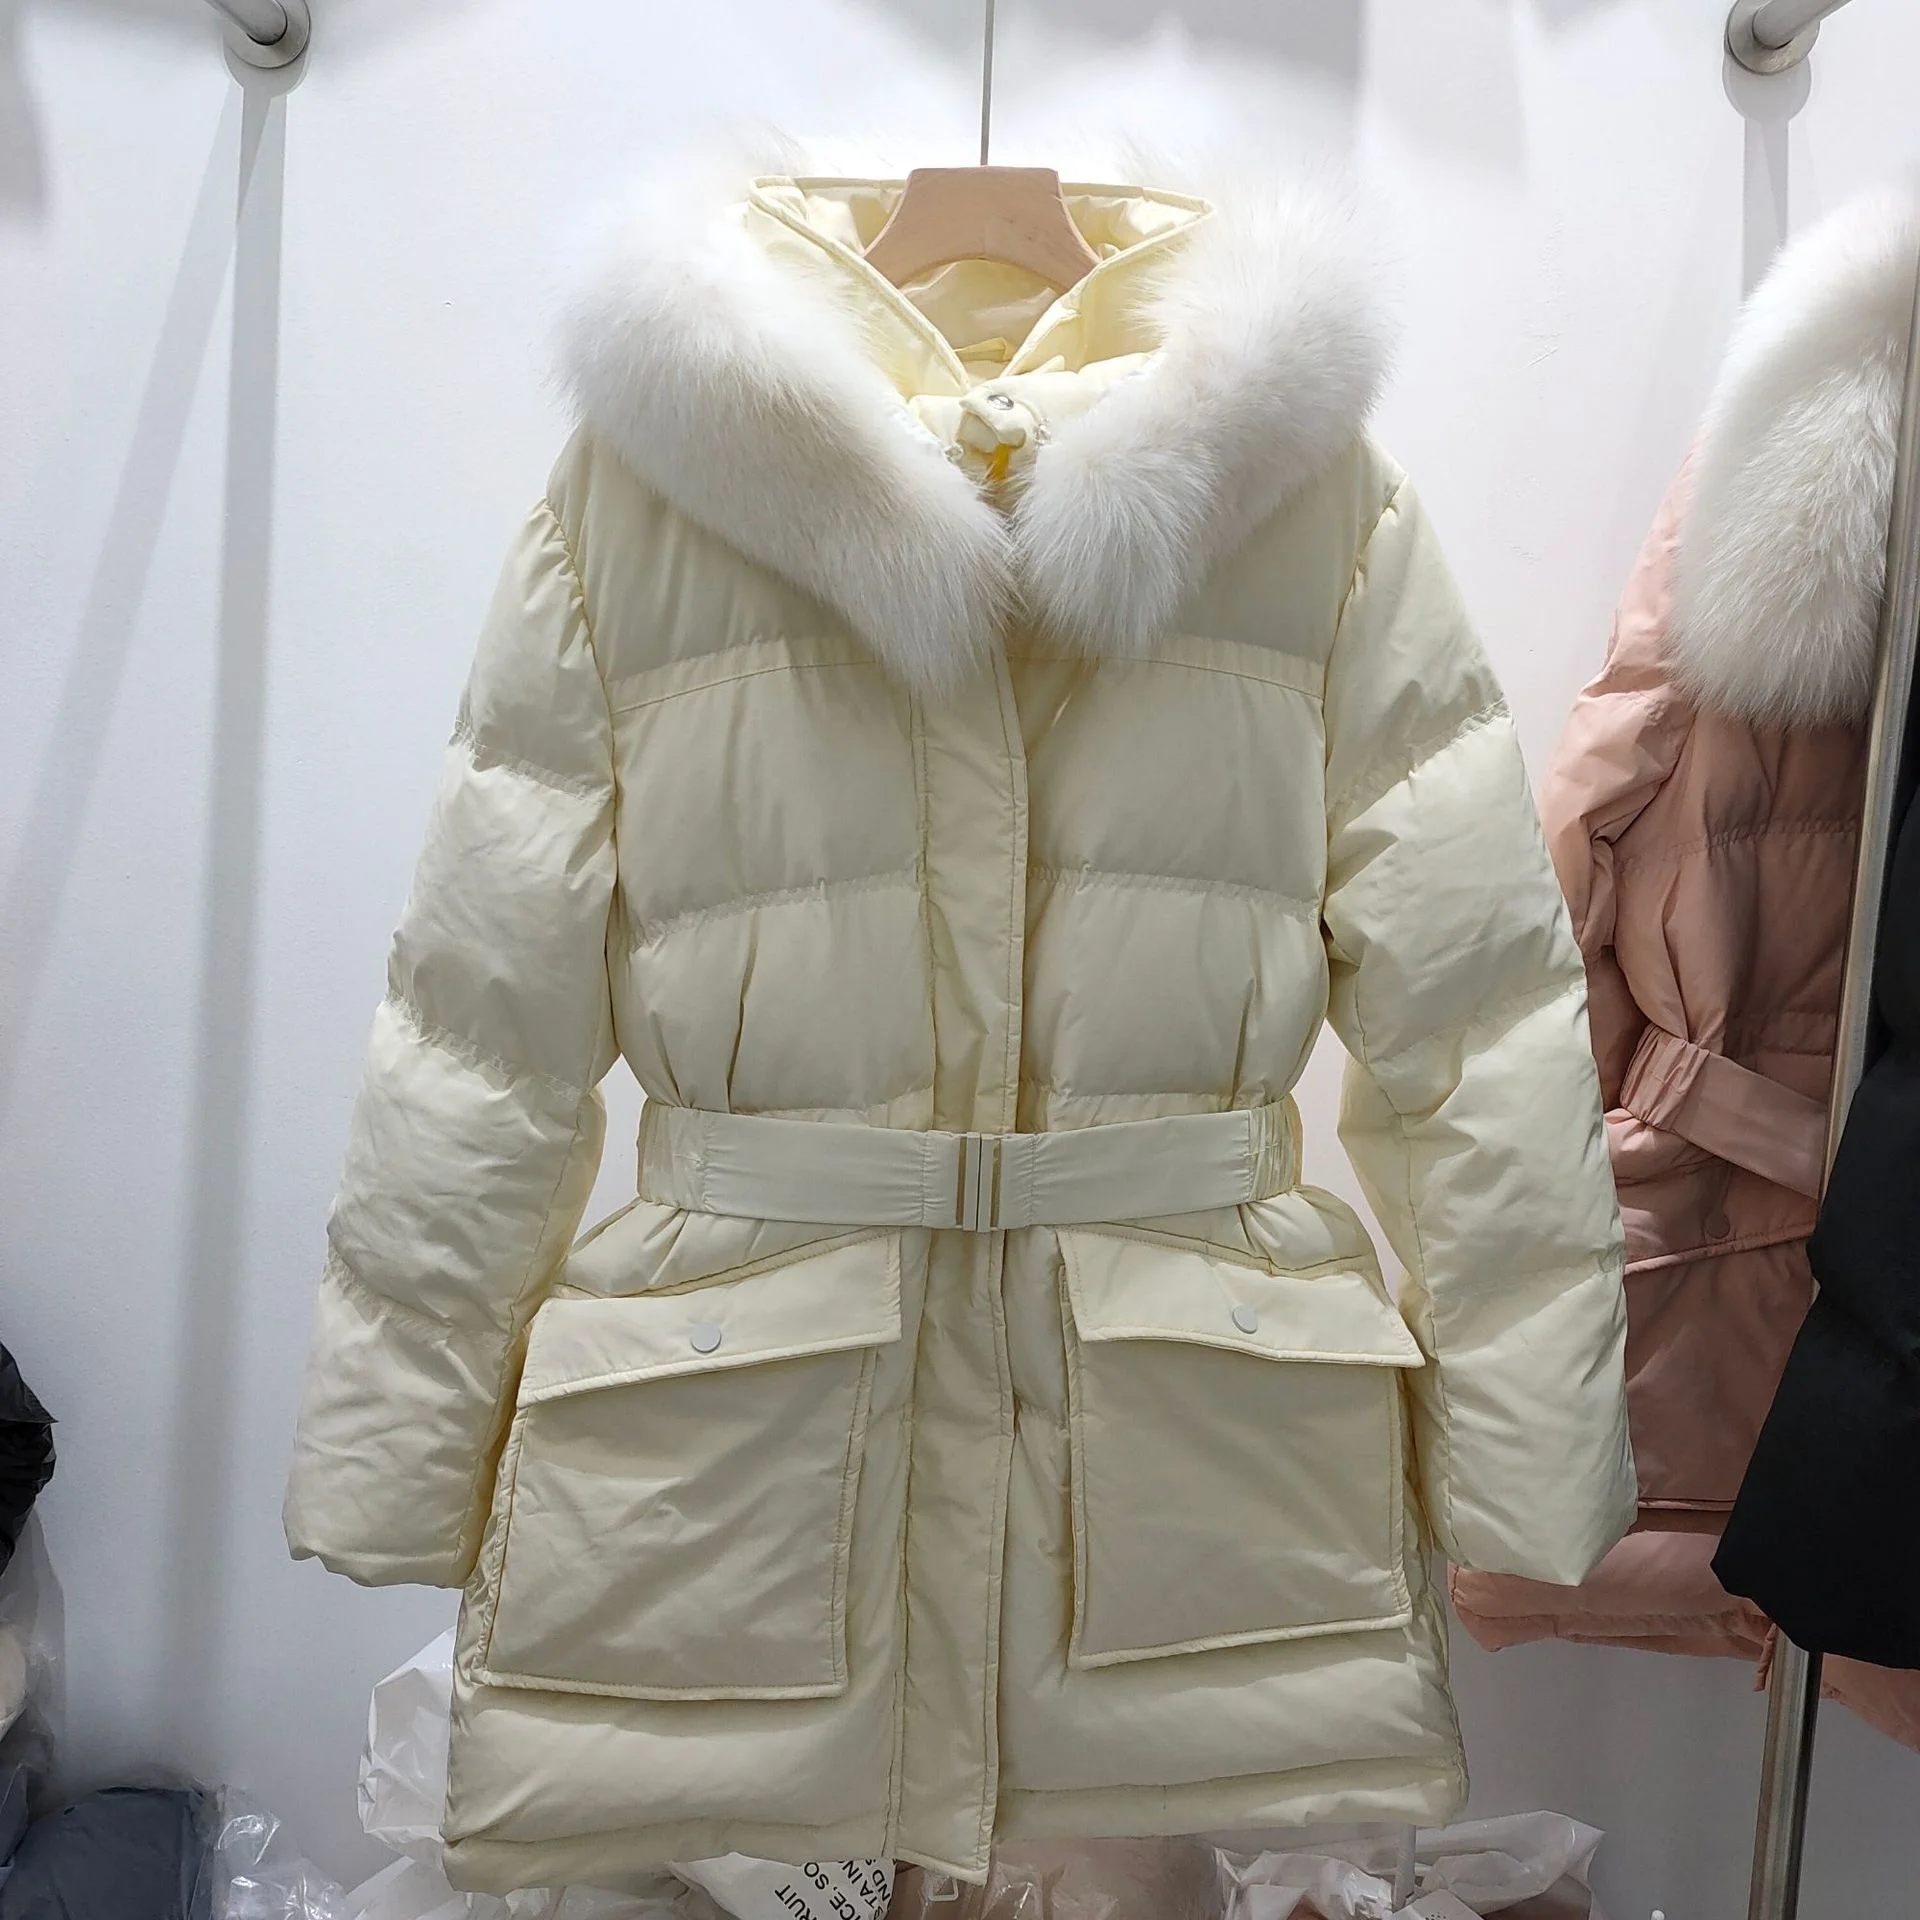 Kore dongdamen 2021 sonbahar ve kış yeni moda aşağı ceket kadın orta ve uzun tarzı ile ince bel ve beyaz ördek